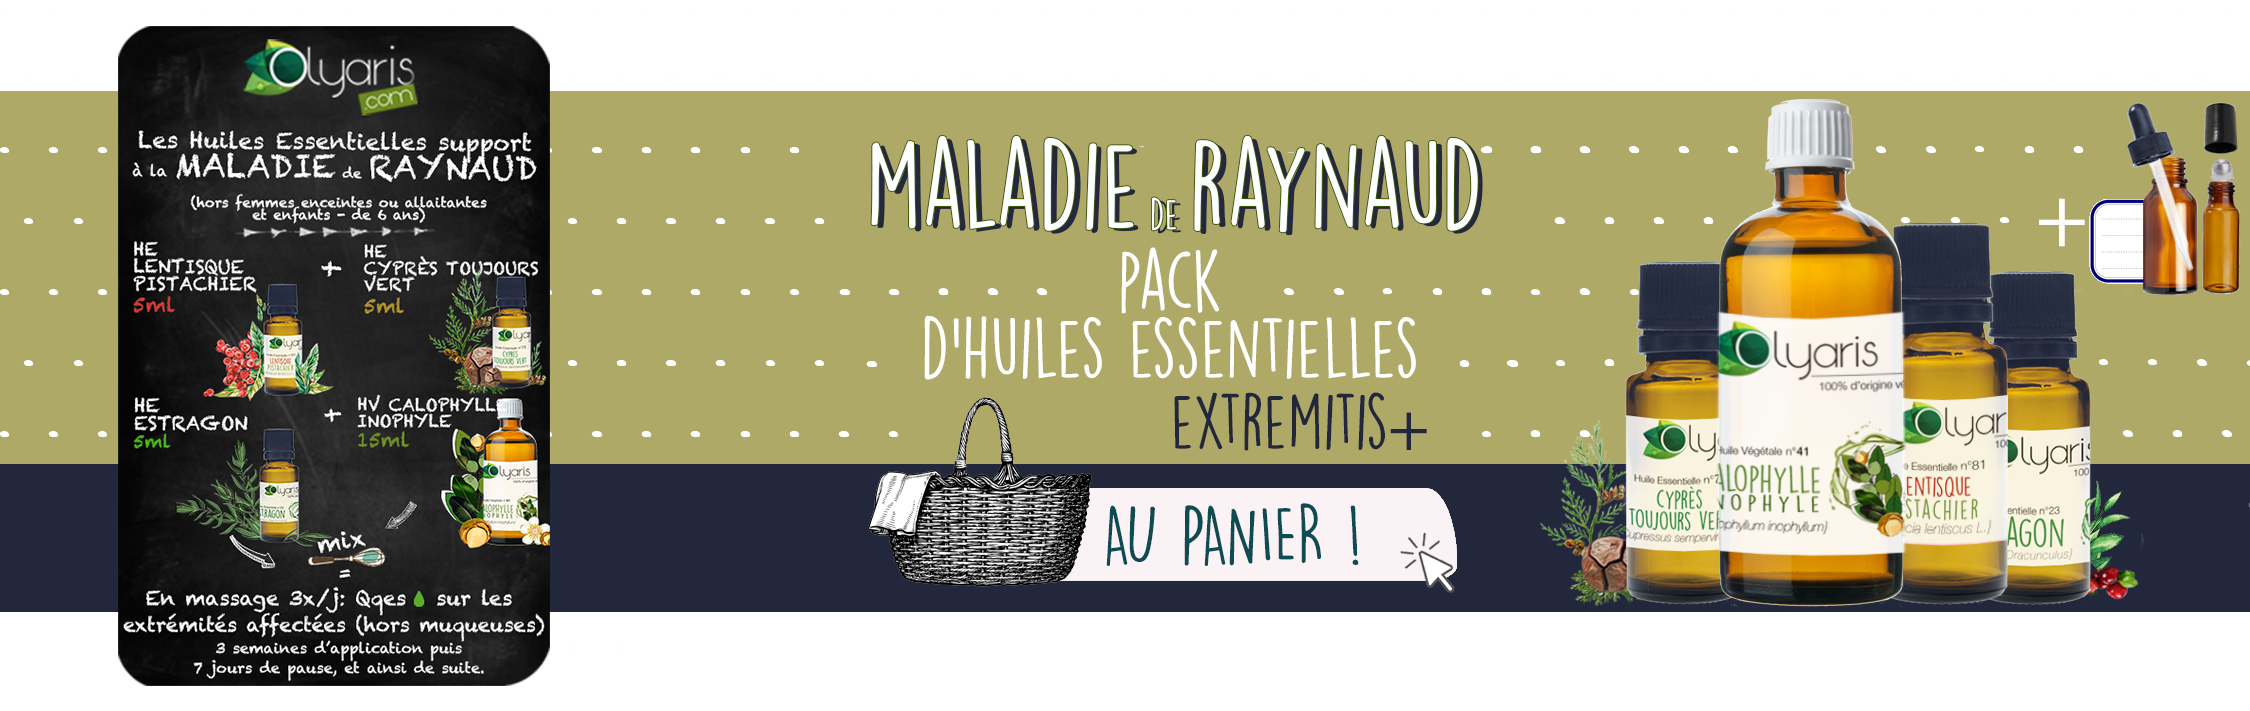 Maladie de Raynaud : les Huiles Essentielles à Utiliser - Remède Naturel par Olyaris